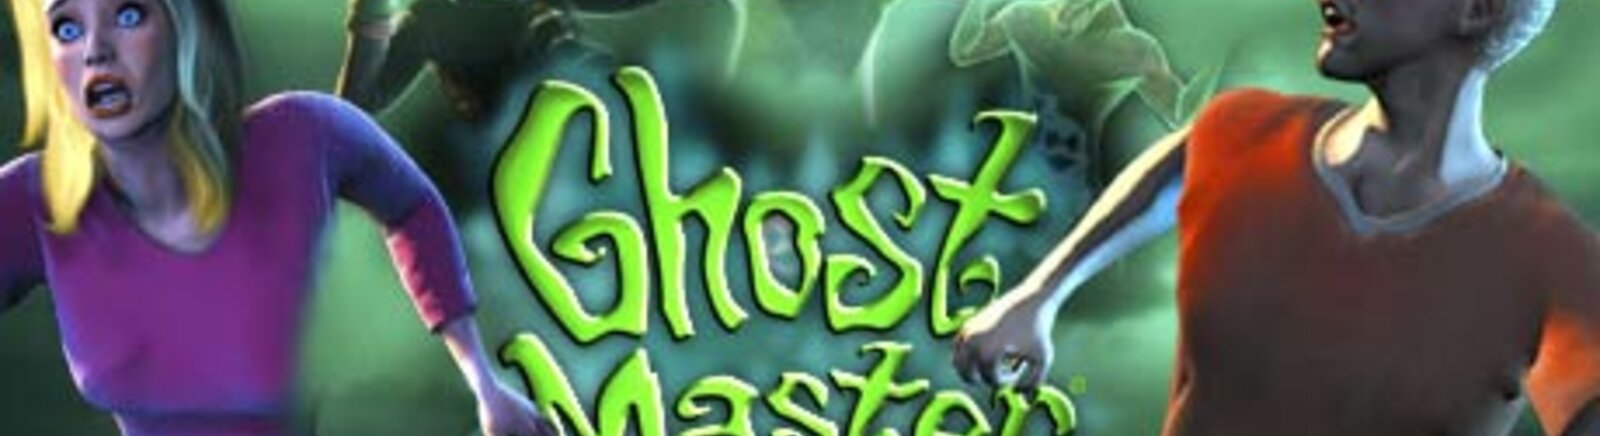 Дата выхода Ghost Master  на PC и Mac в России и во всем мире